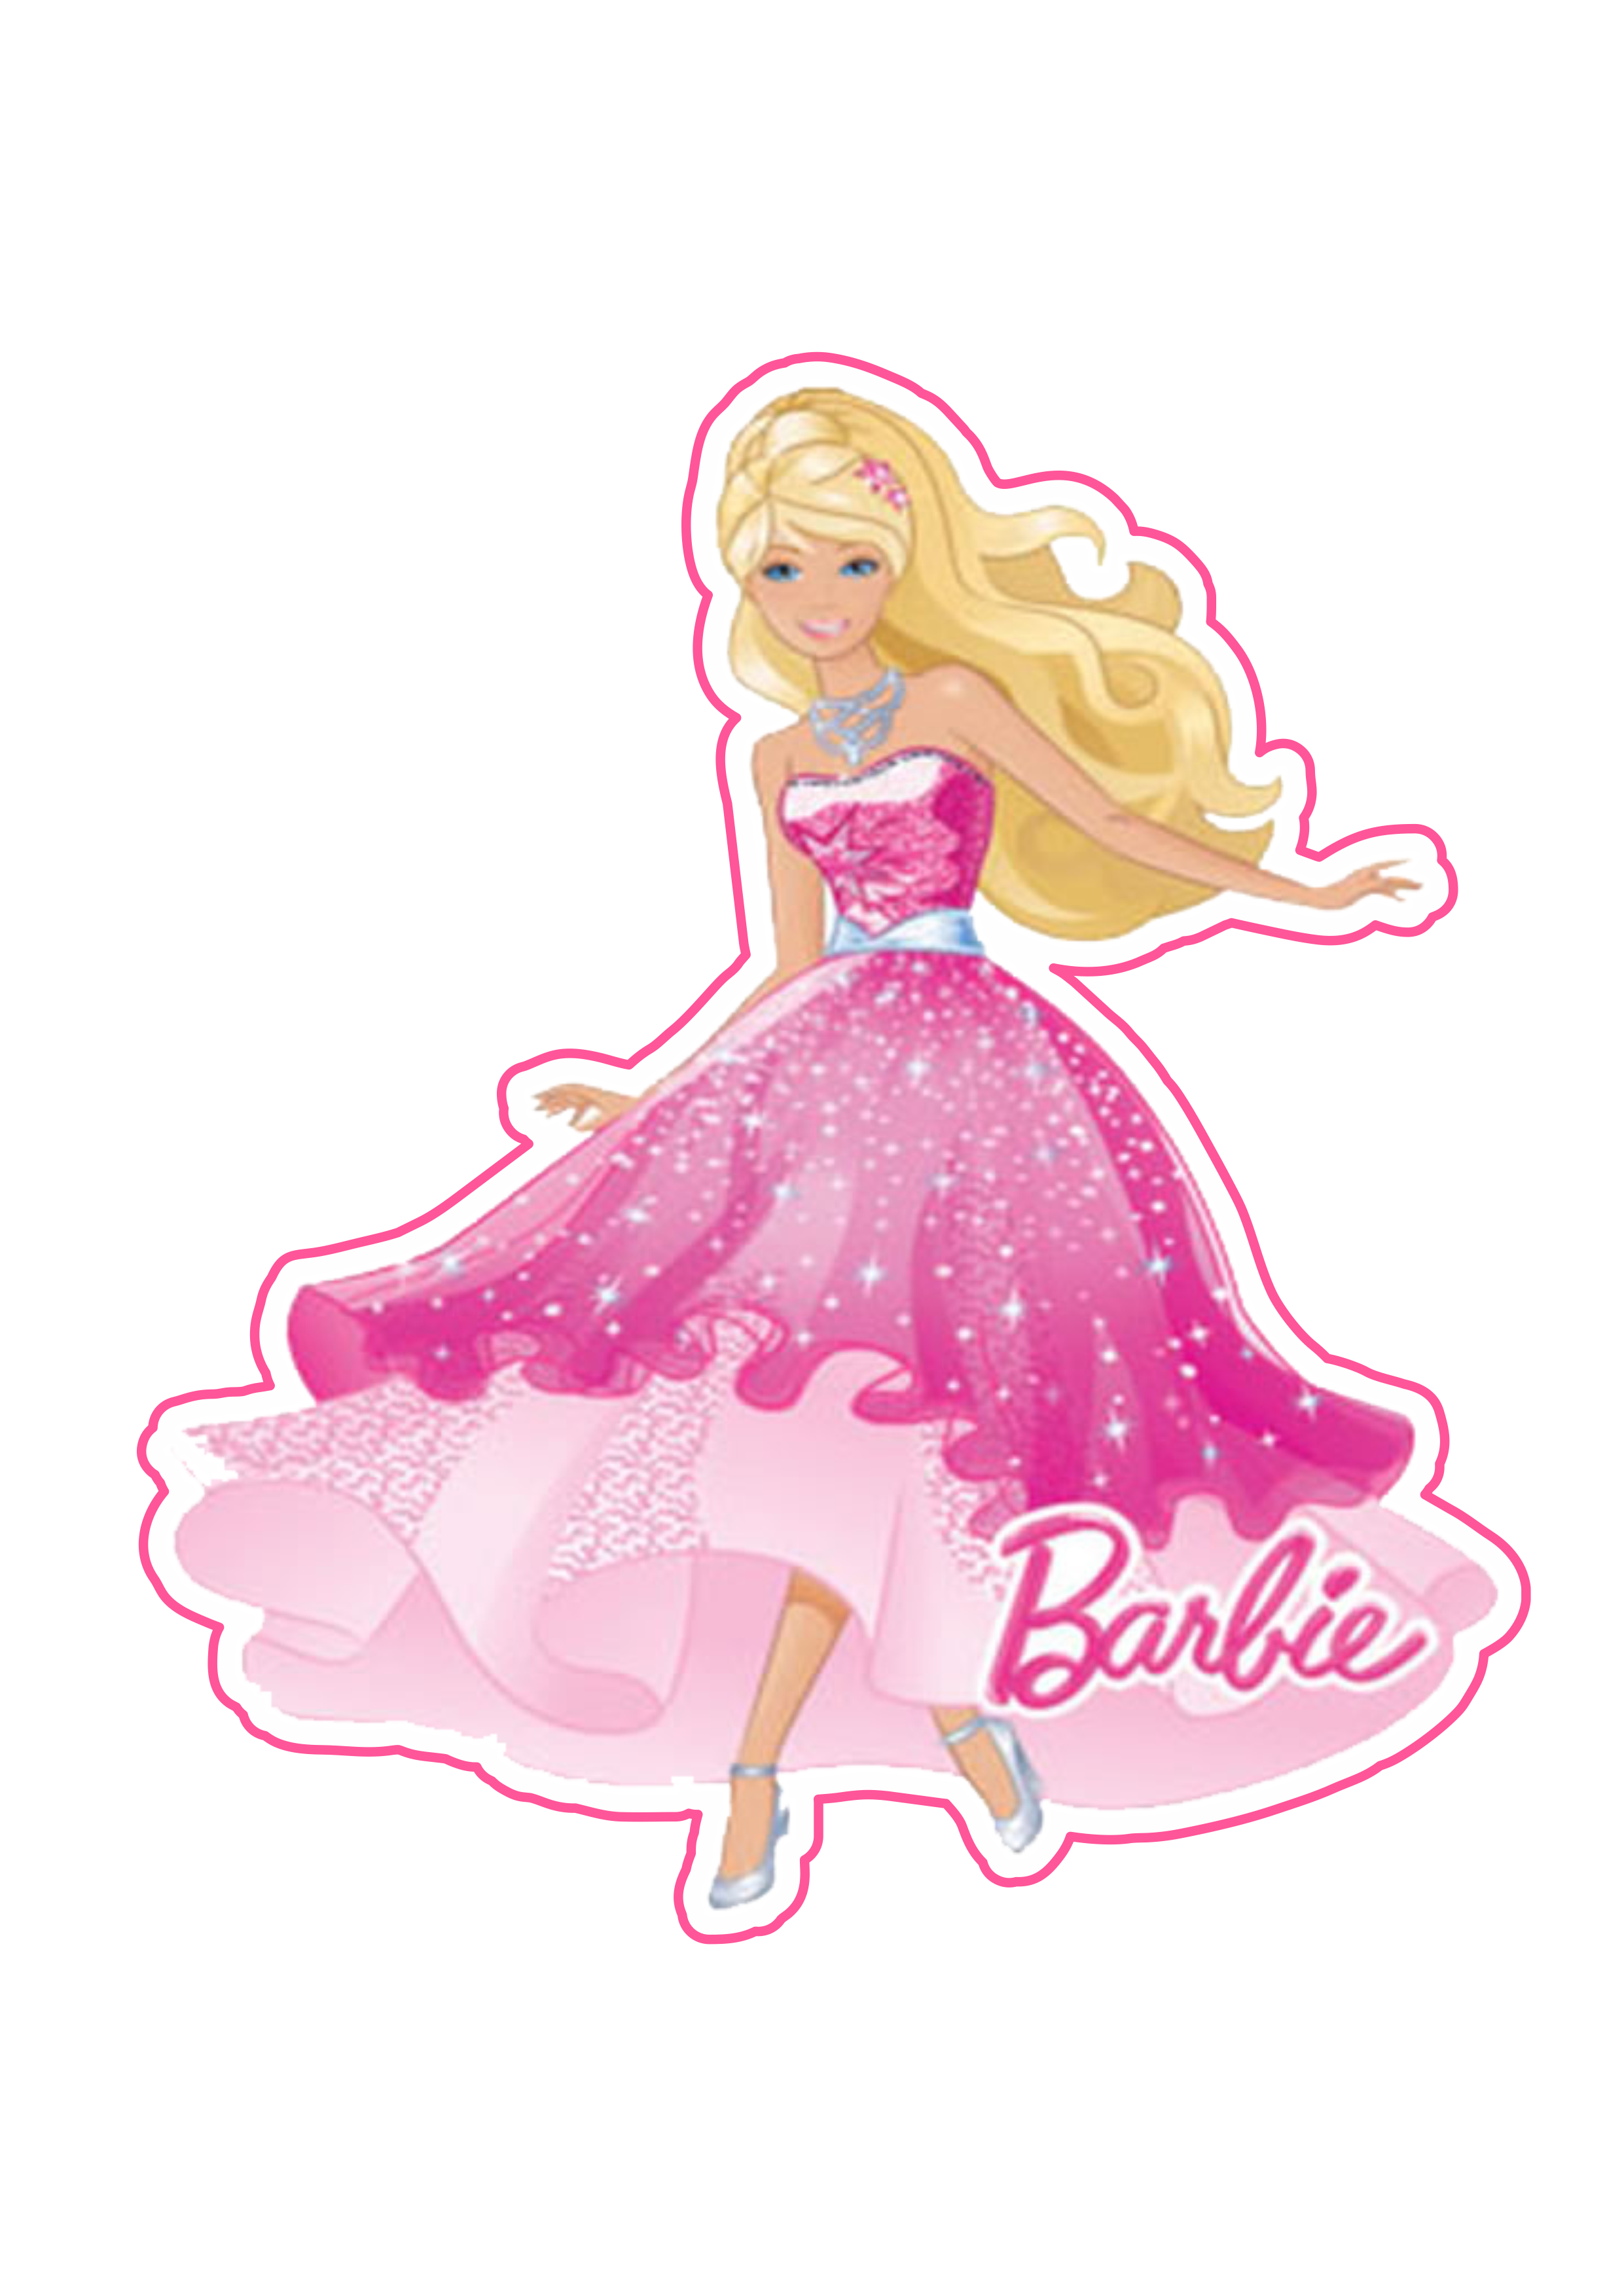 Barbie princesa vestido brilhante personagem fictício imagem grátis fundo transparente com contorno png